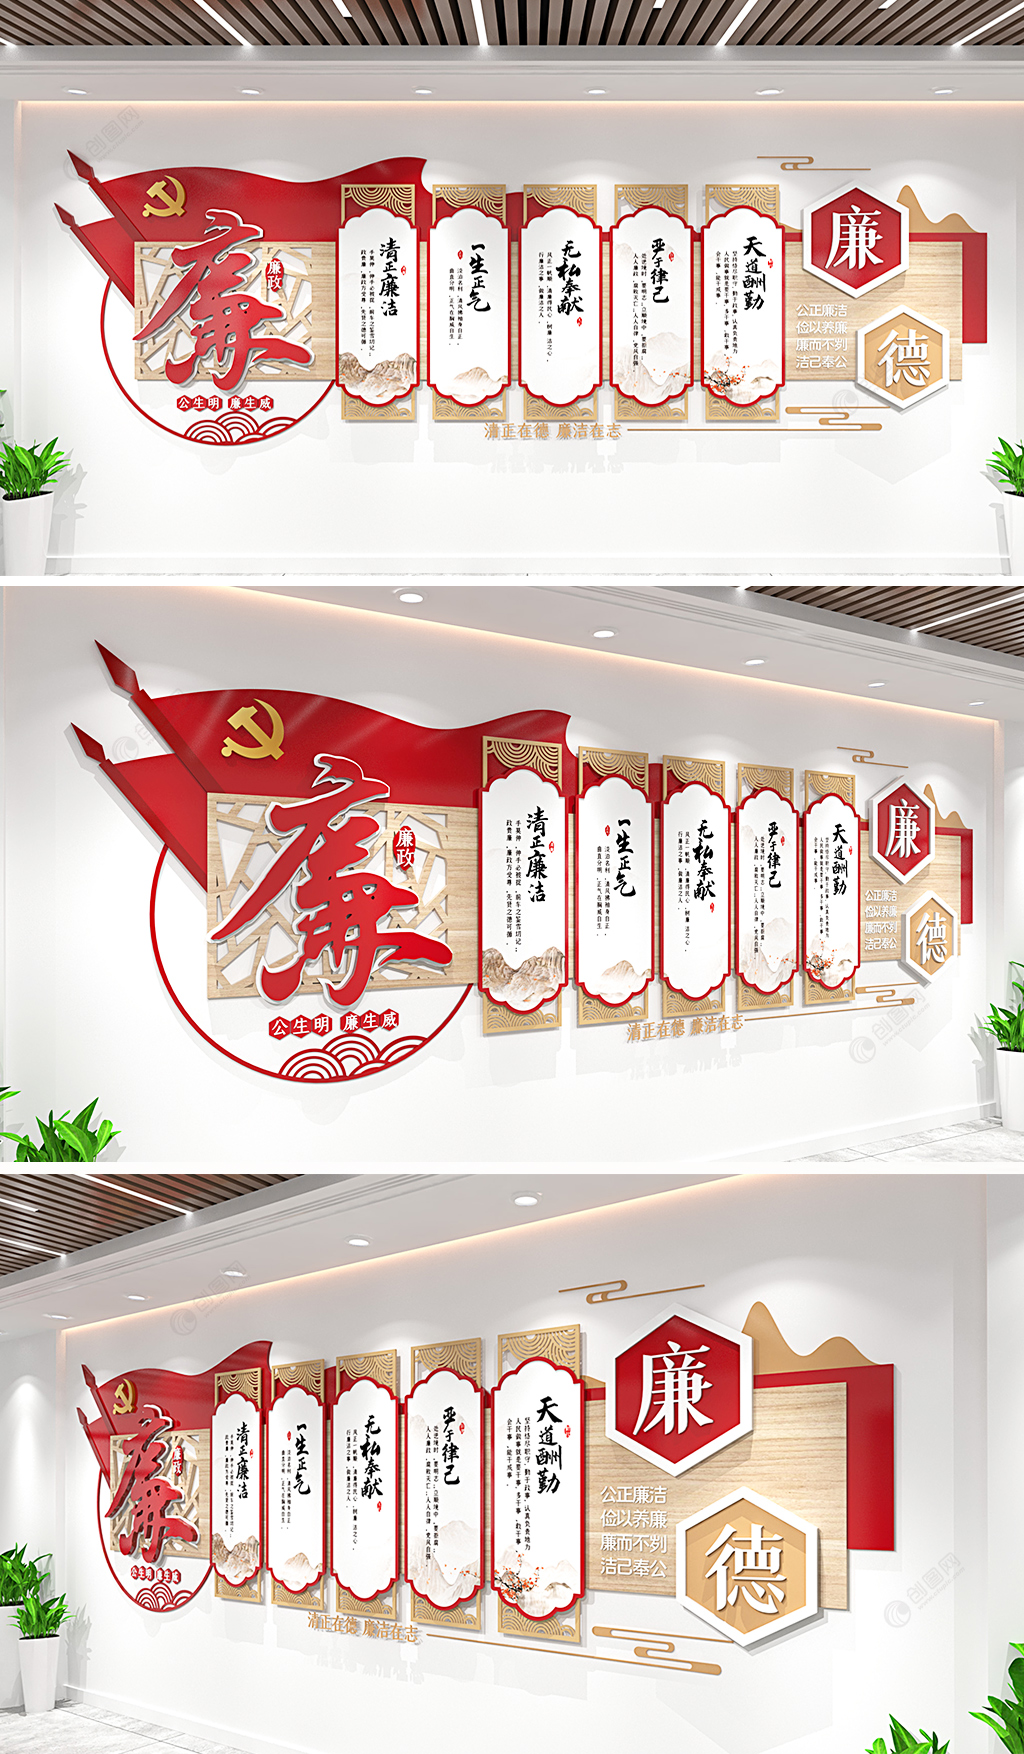 中国风廉政文化墙党建文化墙廉政文化长廊形象墙设计